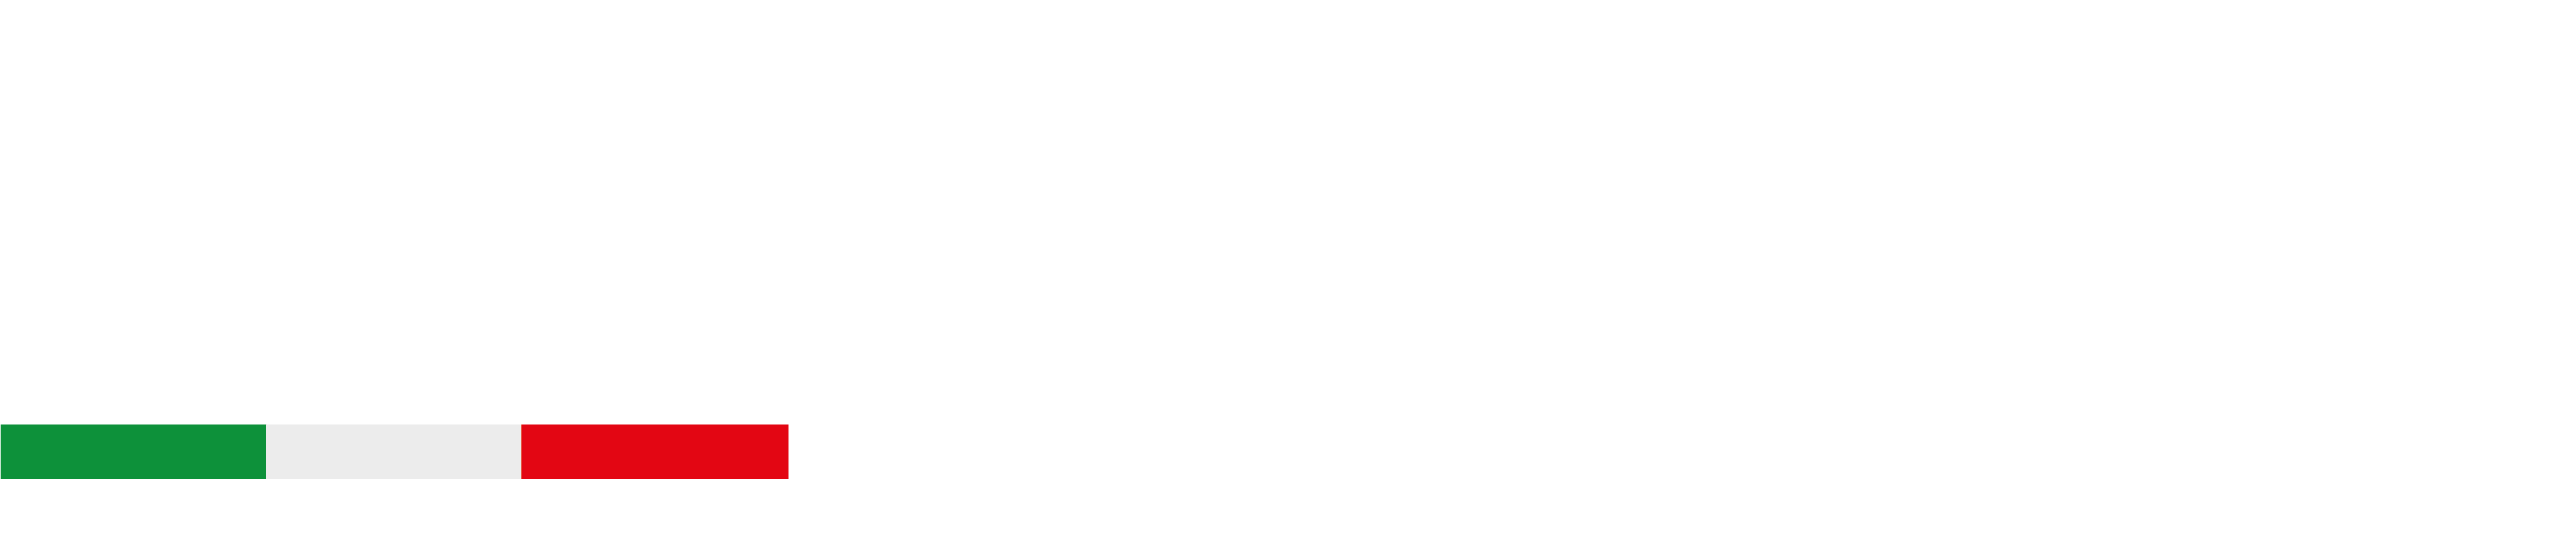 Meet Forum logo_white